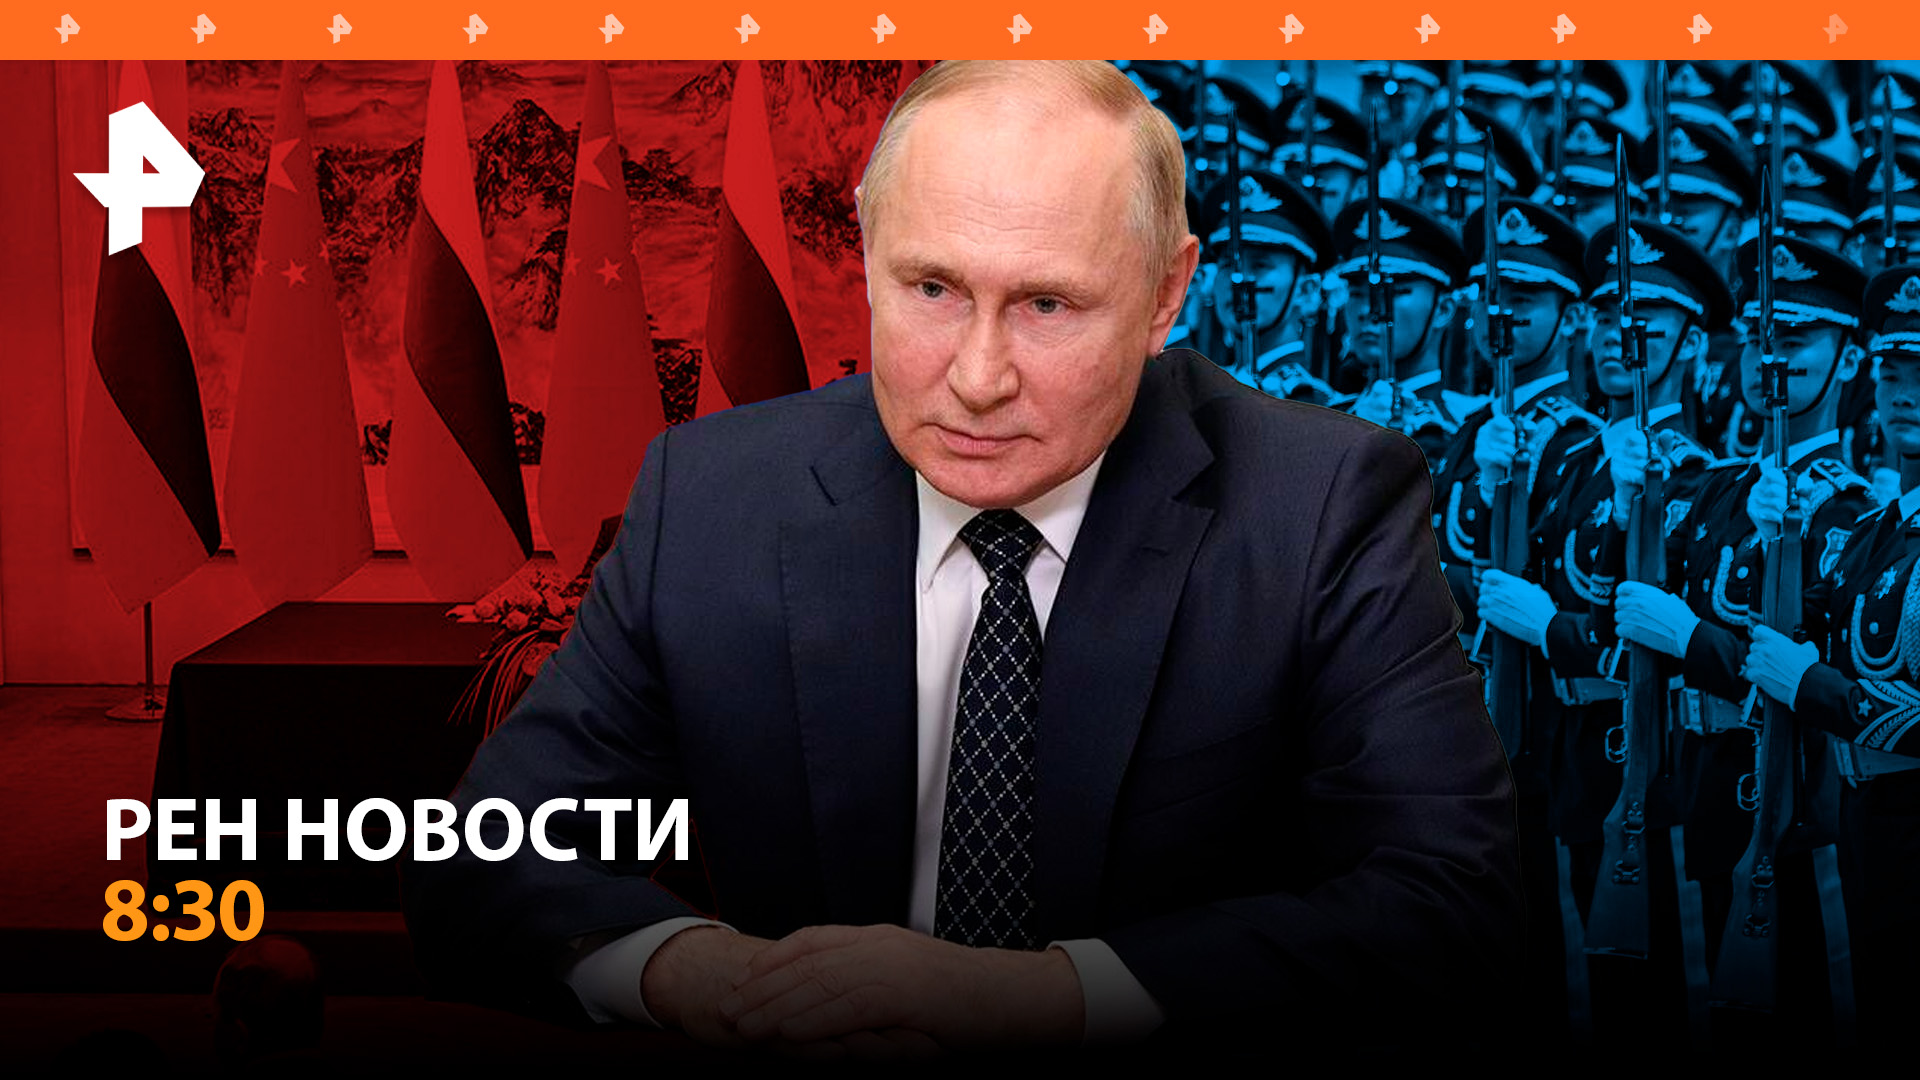 Как проходит второй день визита Путина в Китай / РЕН Новости 8:30, 17.05.24